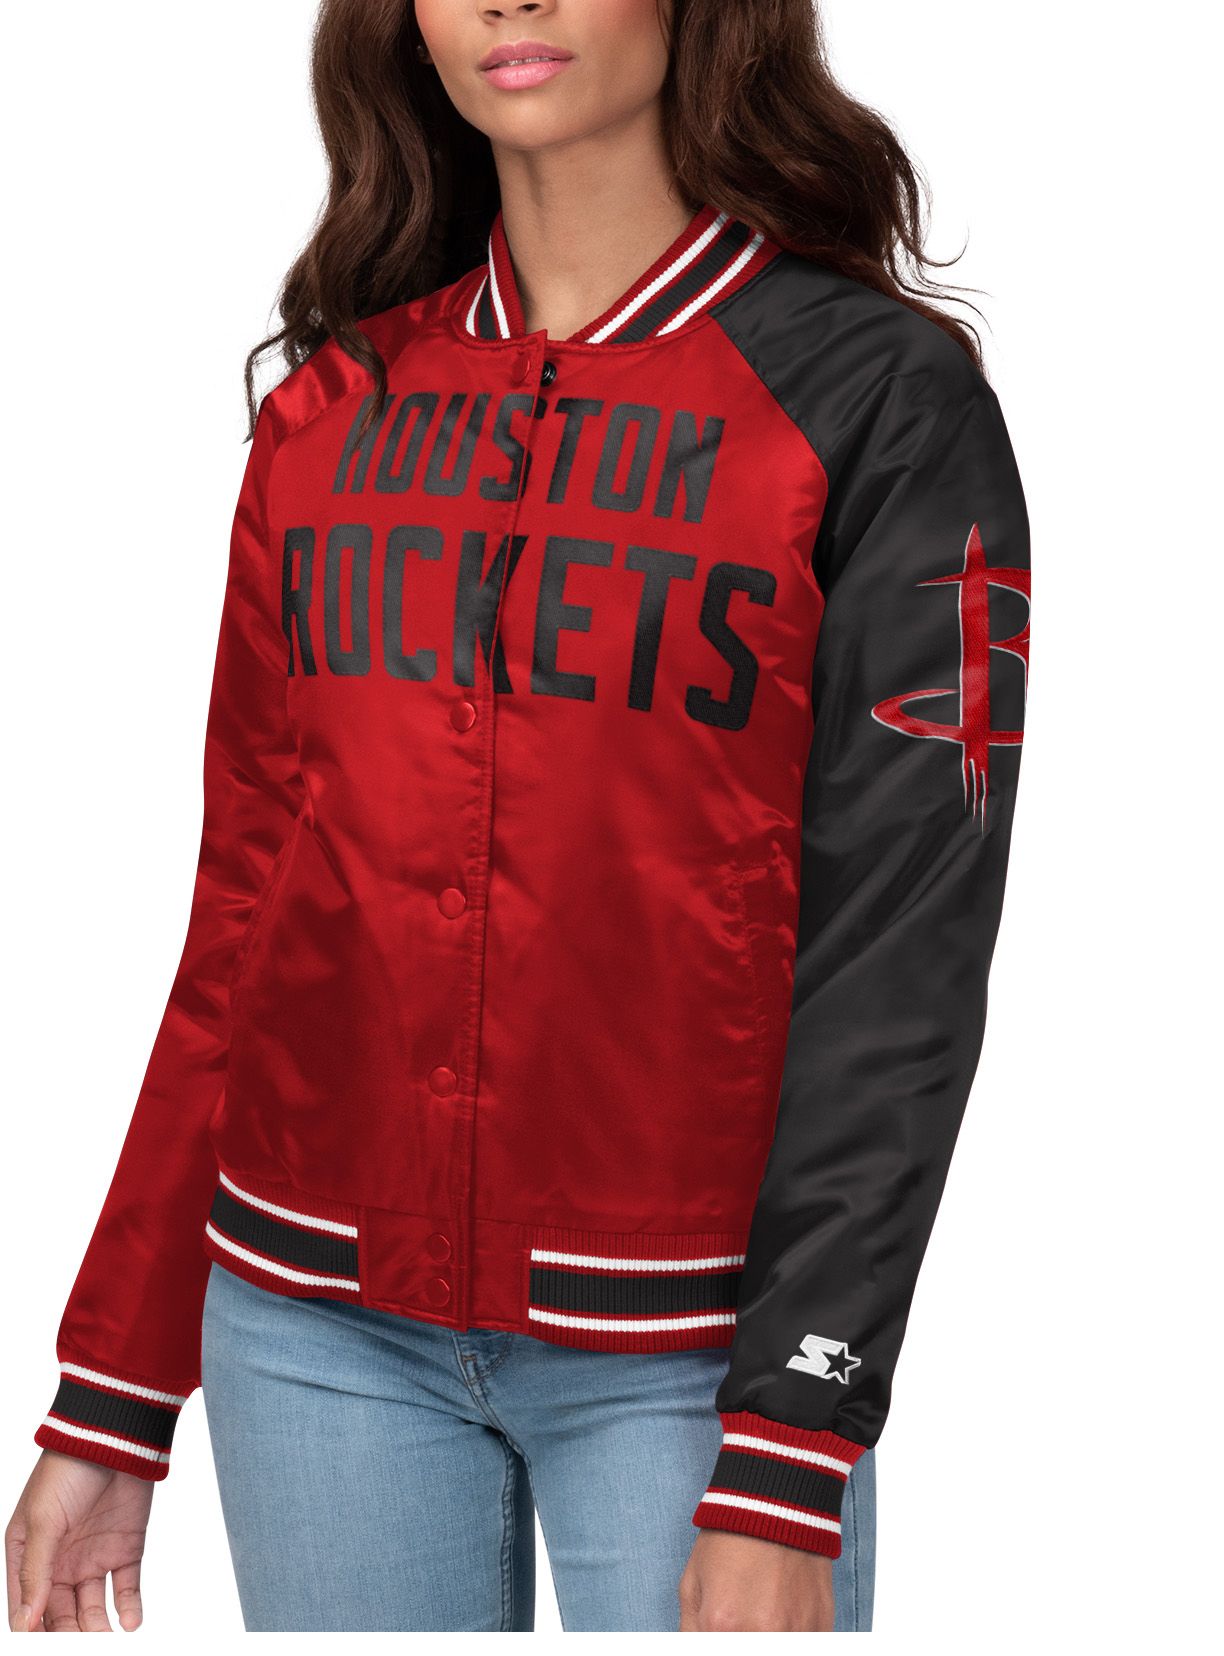 Houston Rockets Women's Apparel 